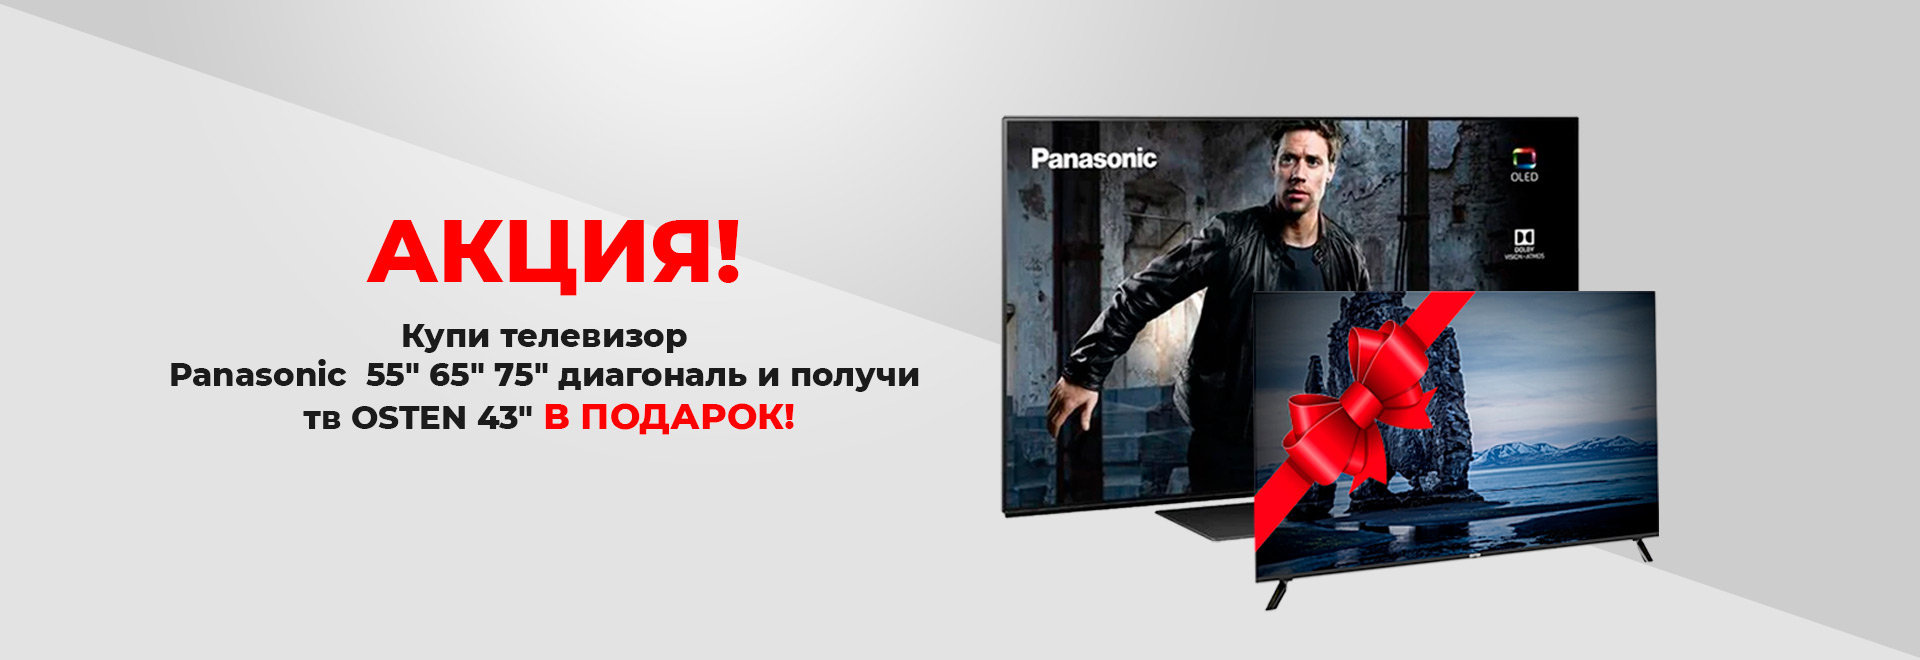 Купи телевизор  Panasonic и получи тв Osten в подарок!